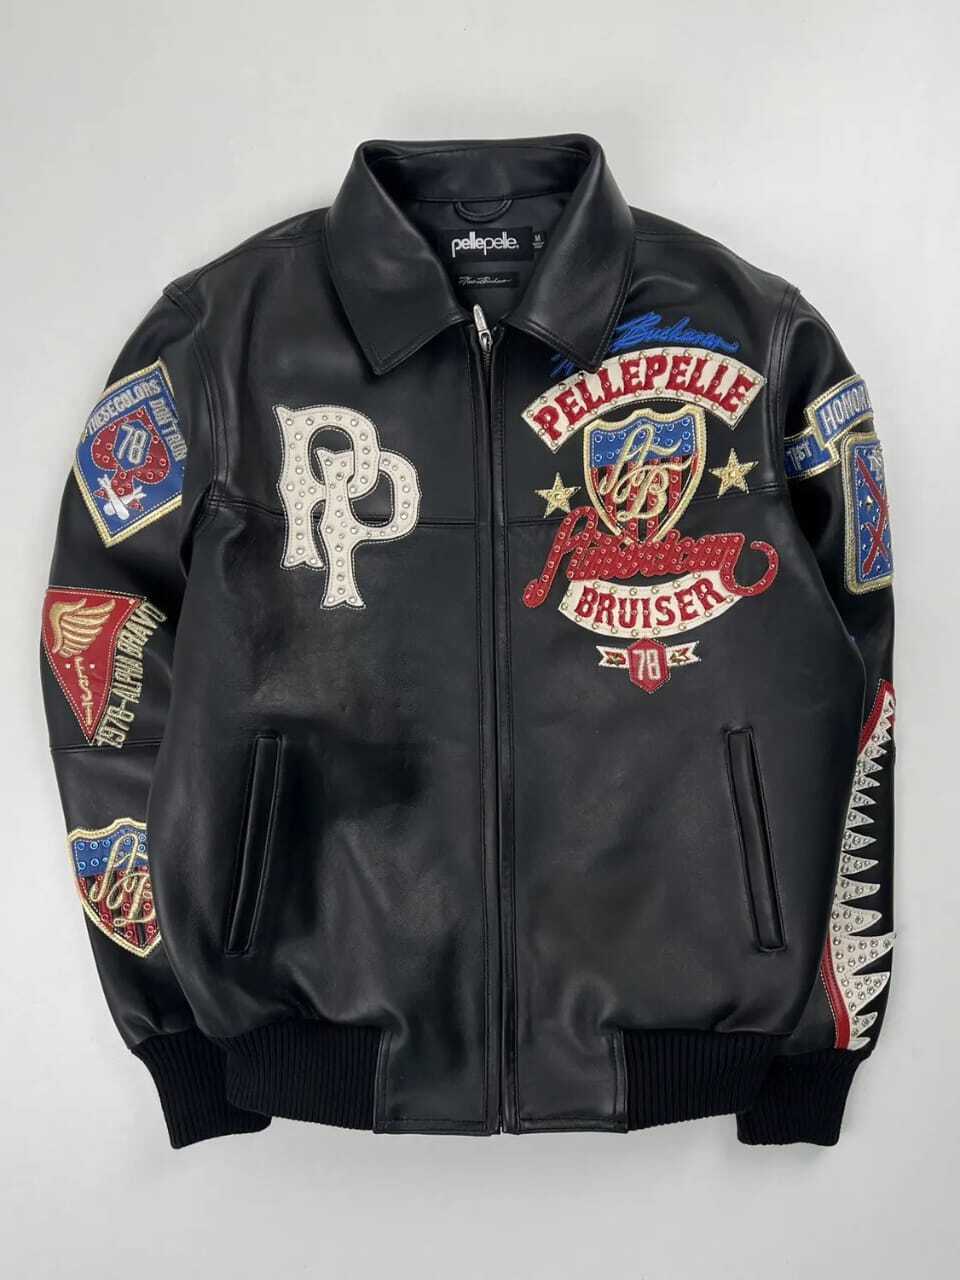 Pelle Pelle American Bruiser Plush Leather Jacket - Vintage Leather Jacket - Mar